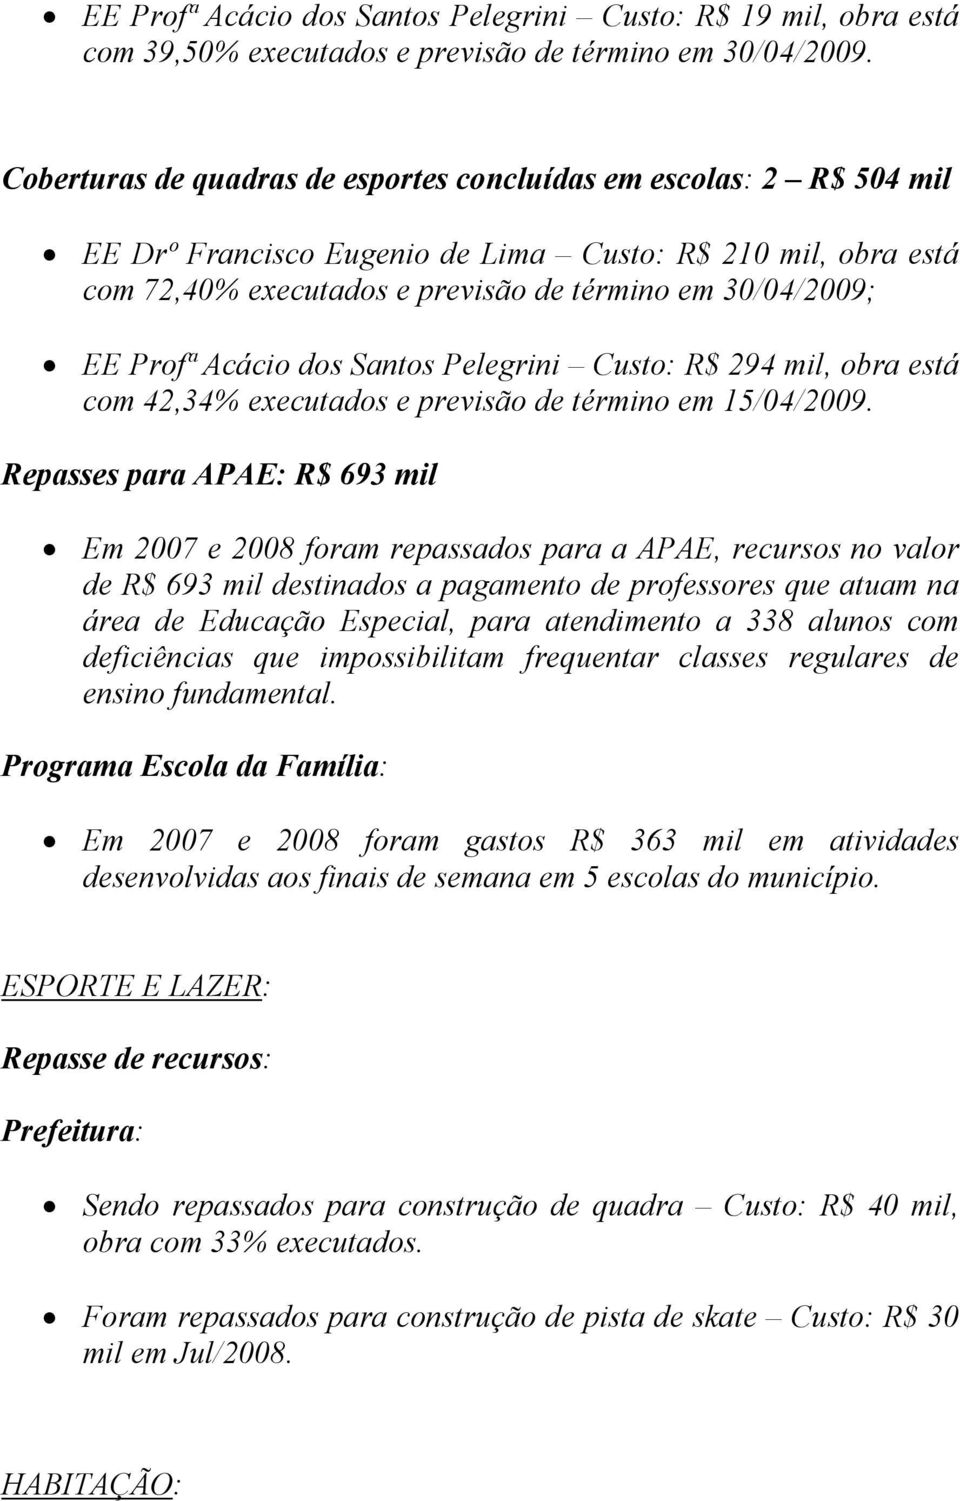 Acácio dos Santos Pelegrini Custo: R$ 294 mil, obra está com 42,34% executados e previsão de término em 15/04/2009.